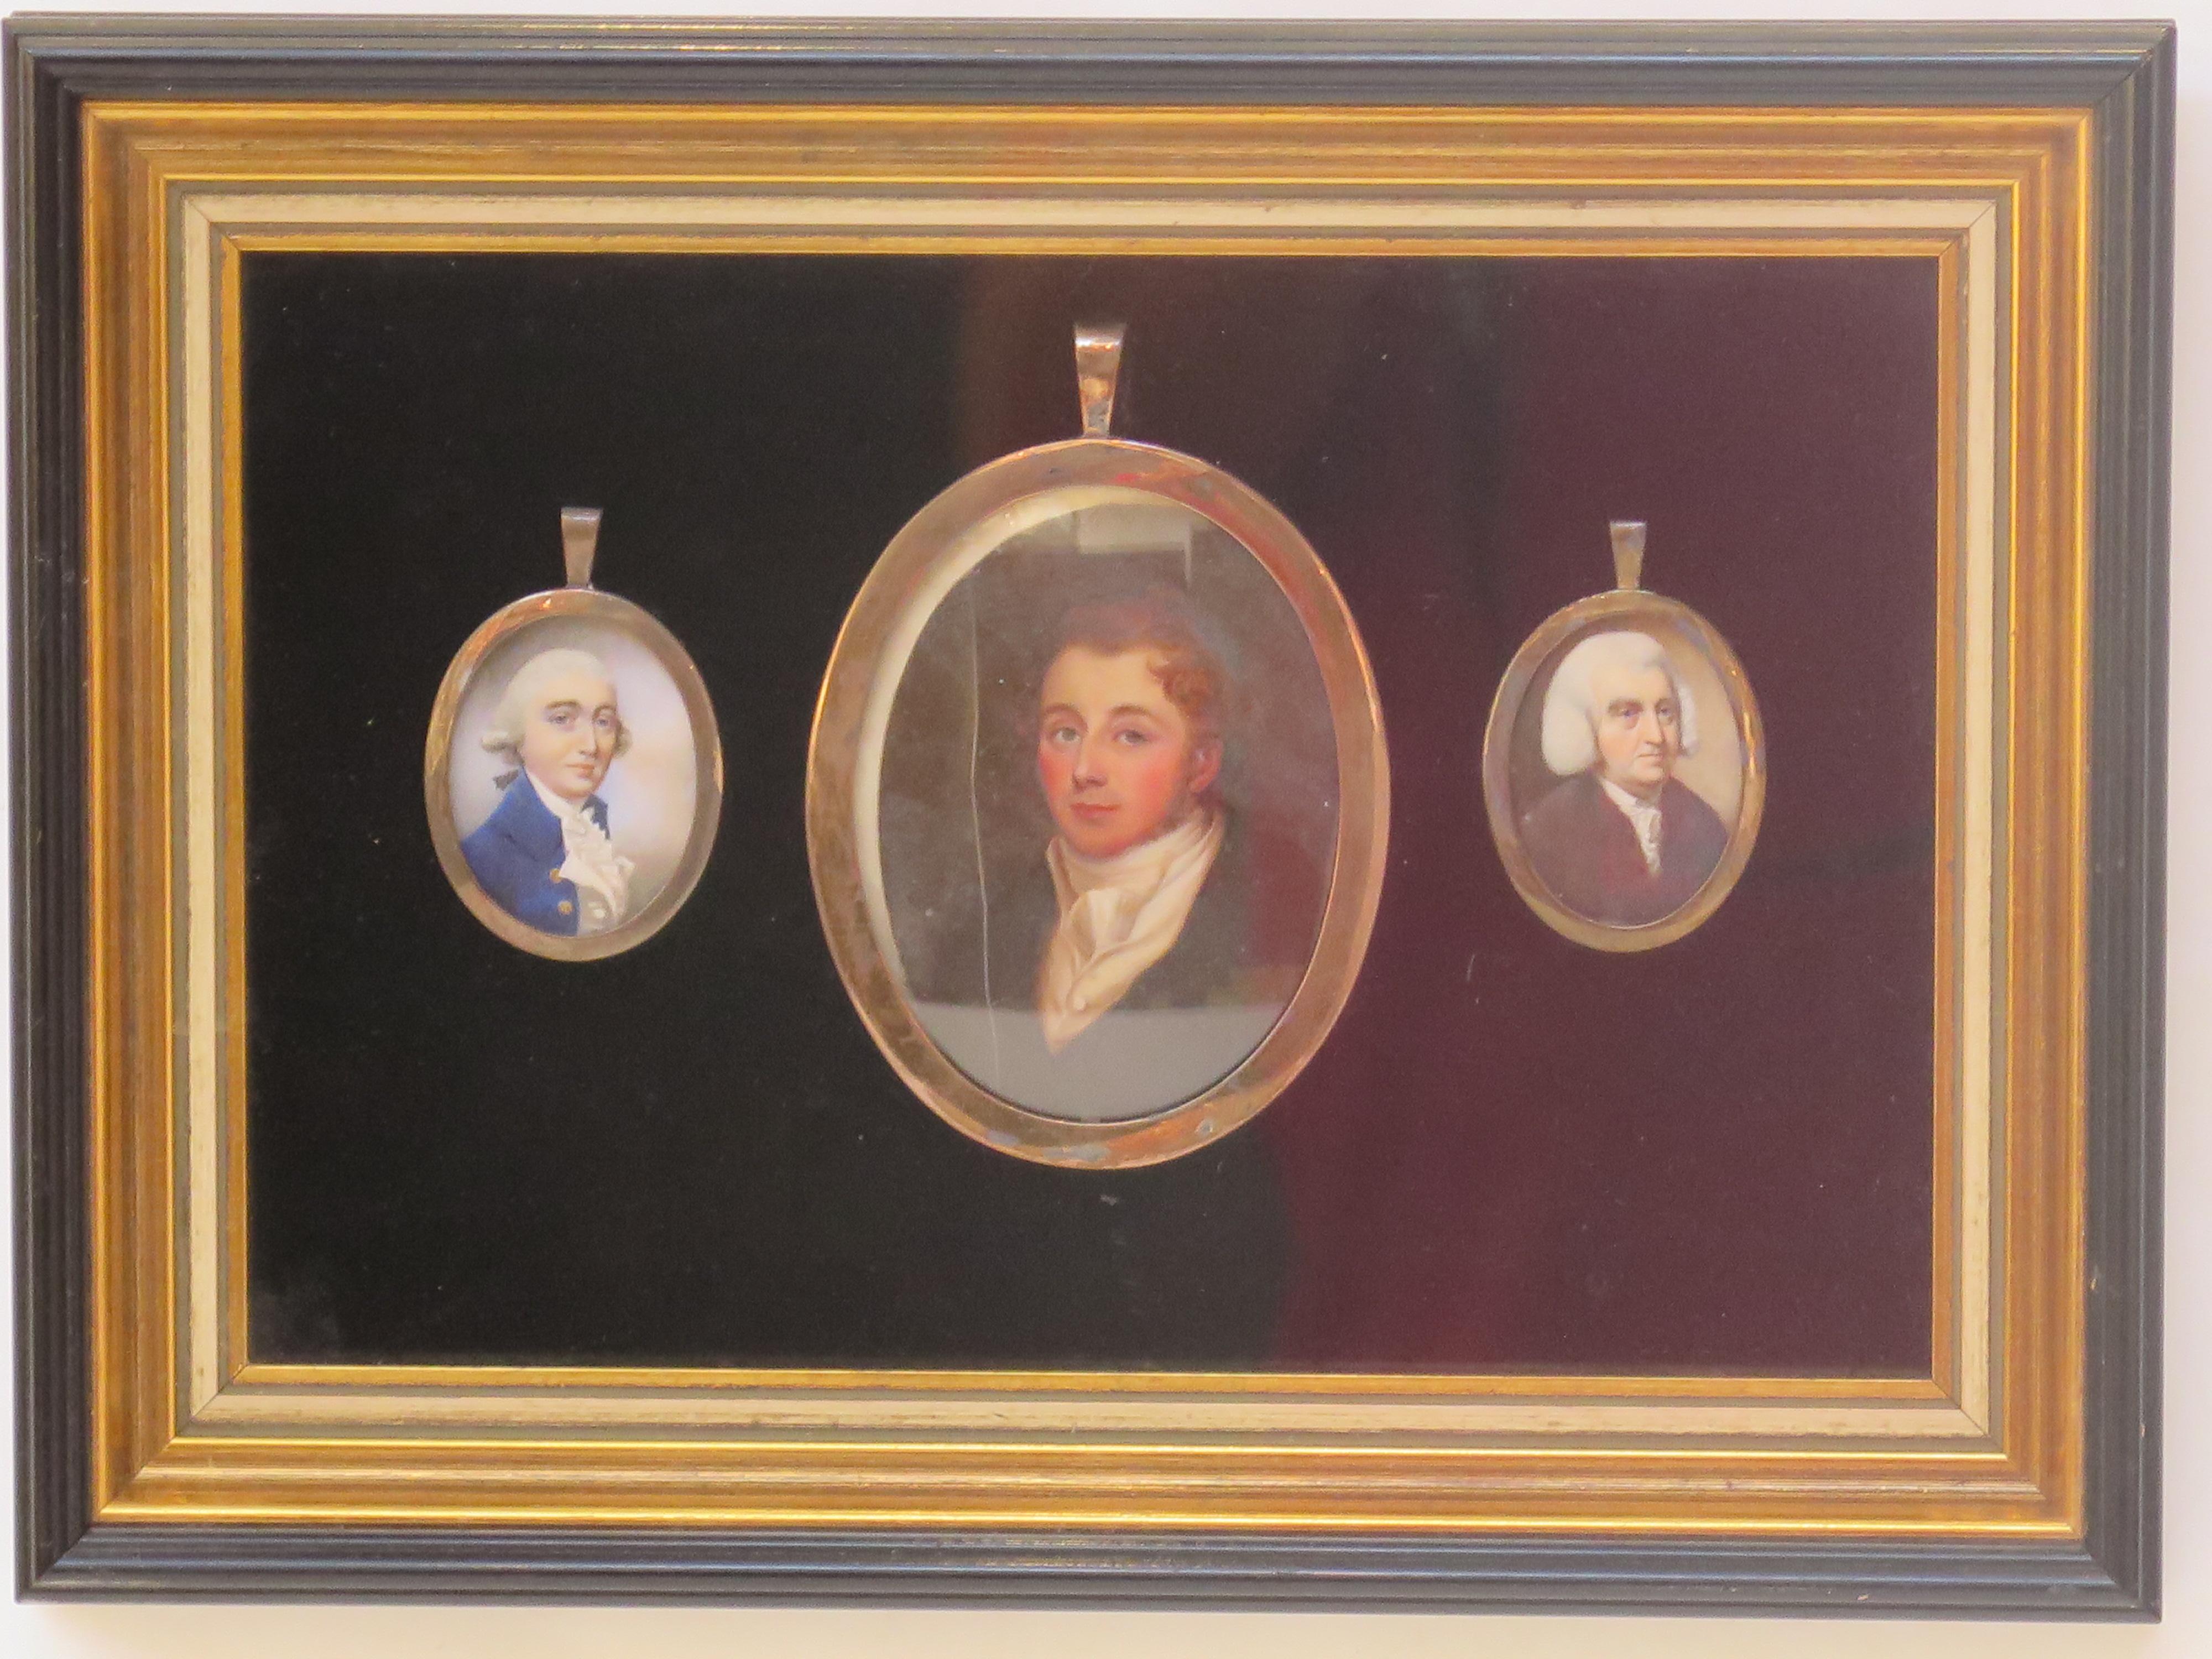 un groupe ou une collection de trois portraits miniatures de gentlemen, encadrés ensemble, le grand tableau central, de style Régence anglaise, montre un jeune homme aux cheveux bruns habillé dans un style populaire à cette époque, les autres petits